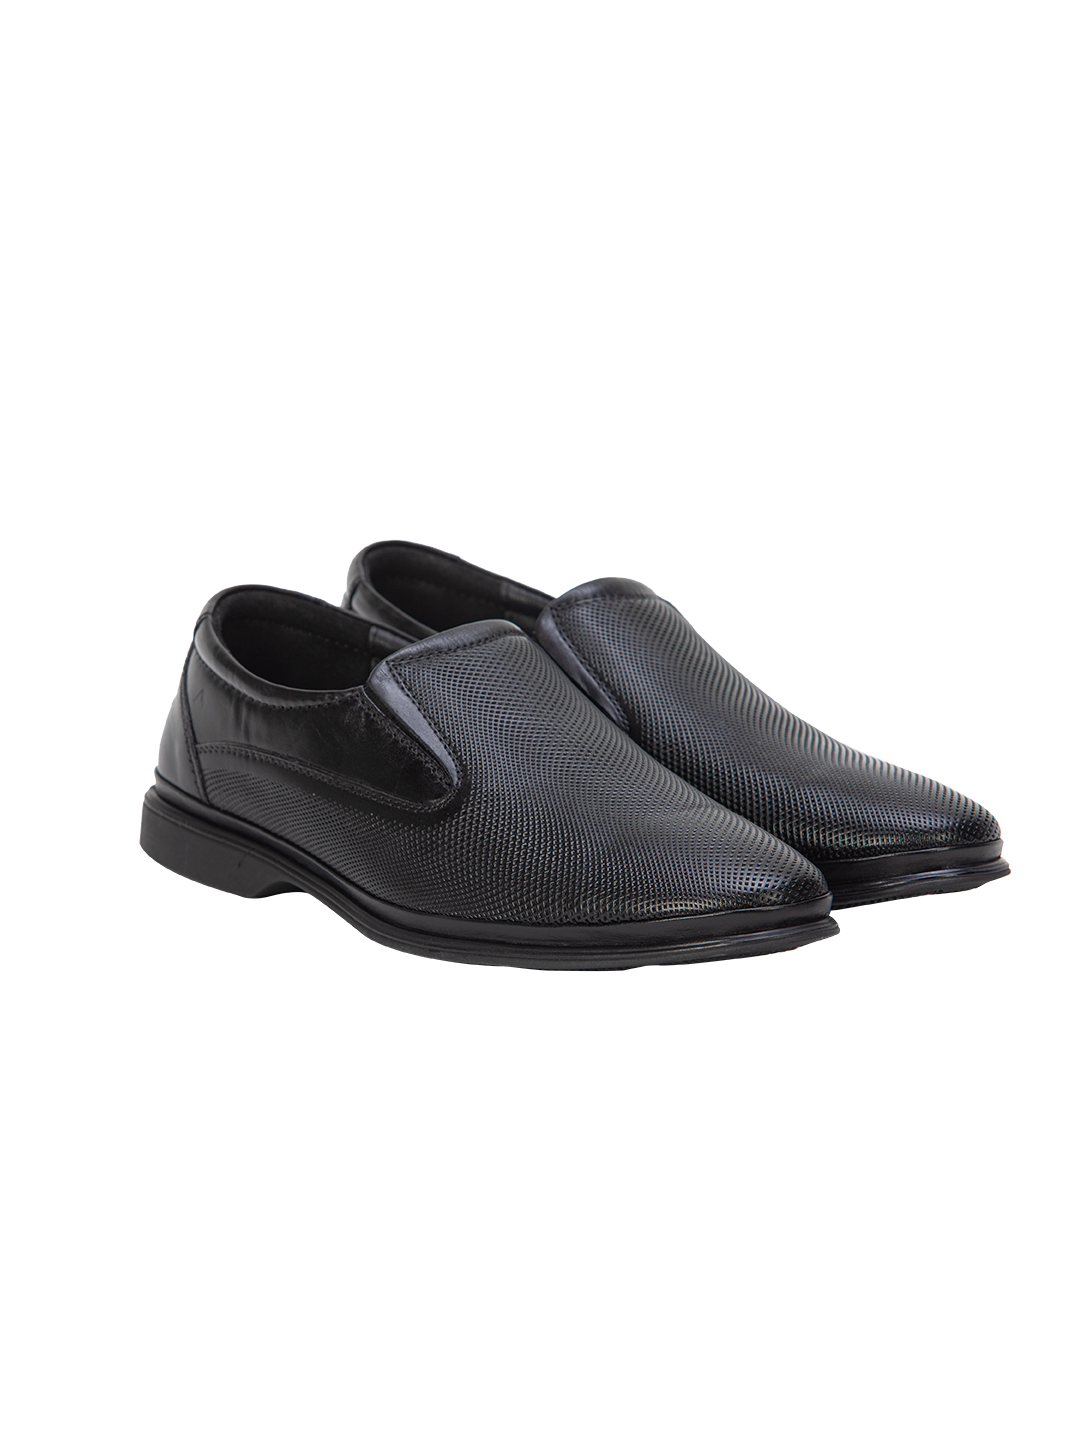 Buy Von Wellx Germany Comfort Mondaine Casual Black Shoes Online in Rajkot